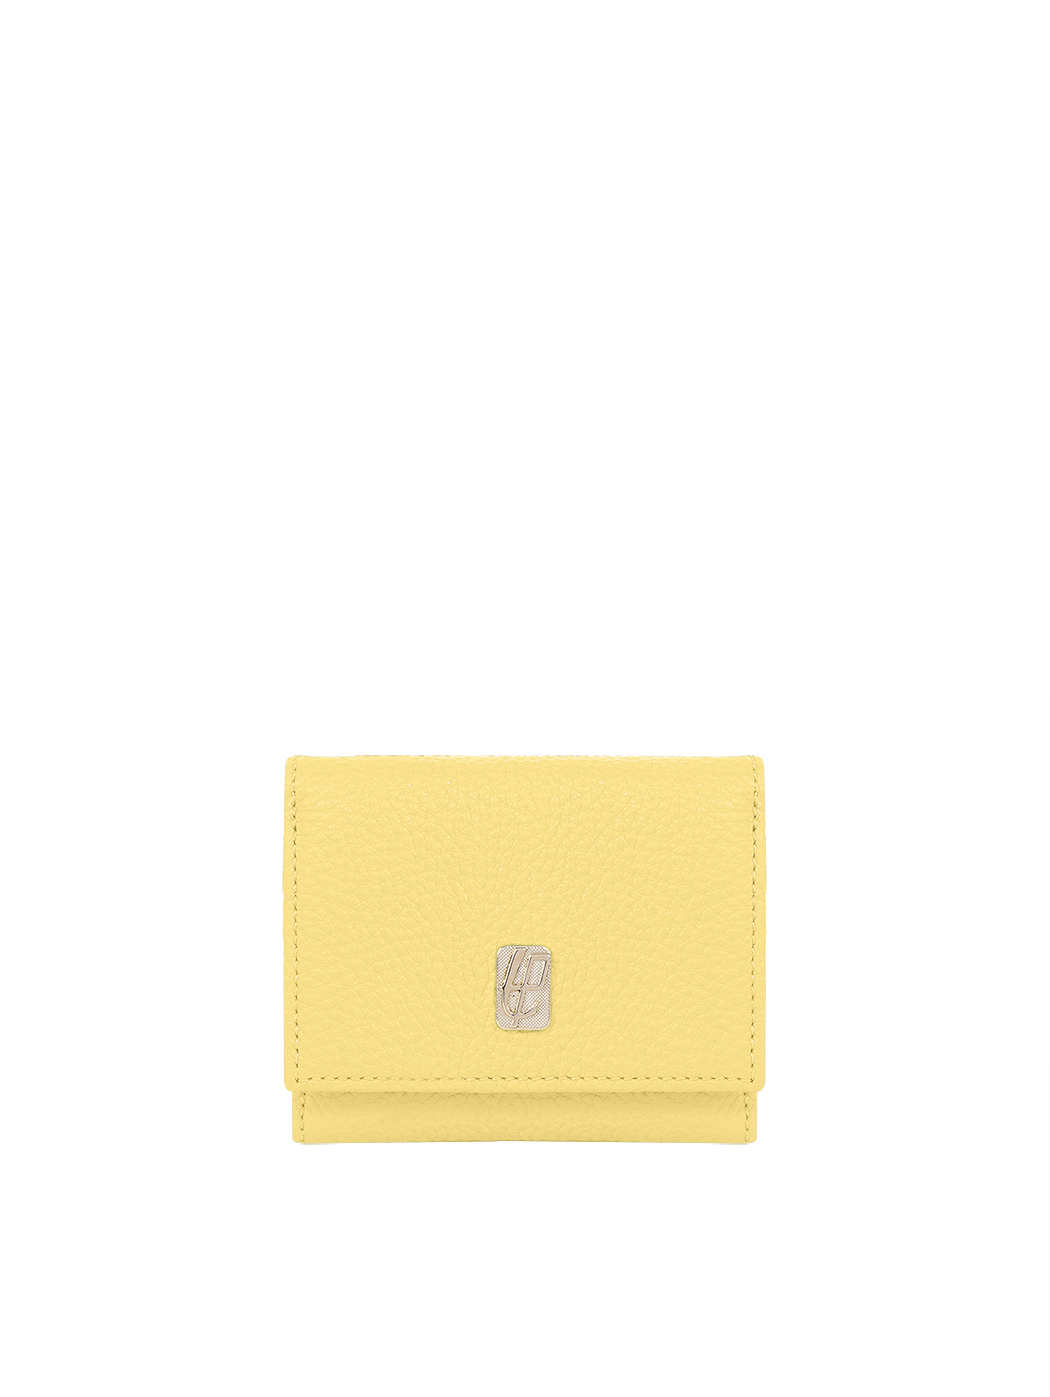 紧凑型卵石纹双折皮革钱包 黄色